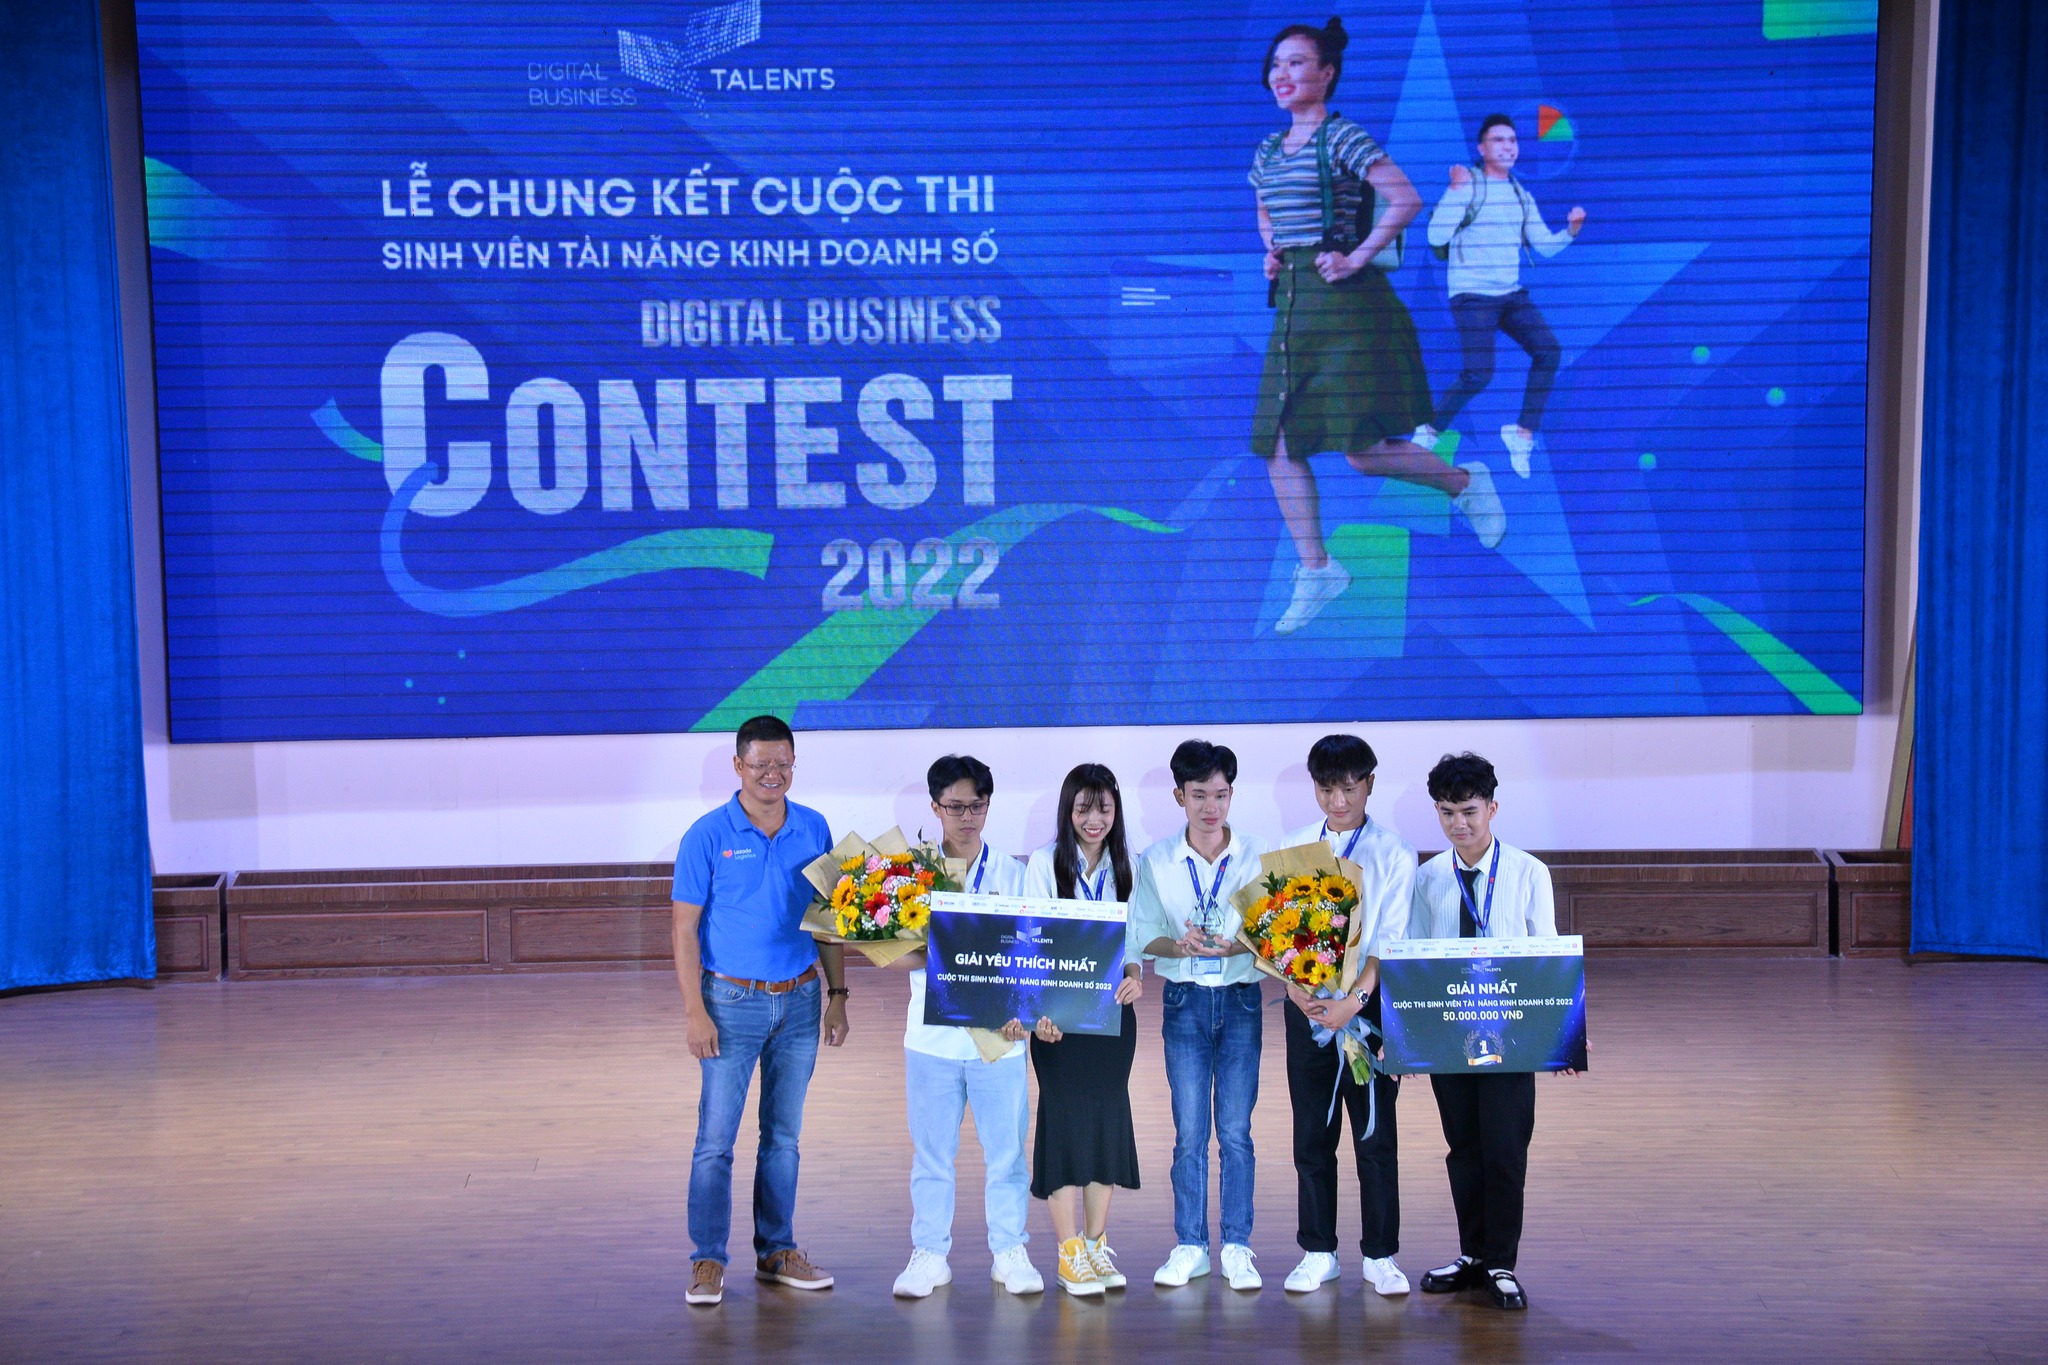 Đội UITERS (Trường ĐH Công nghệ thông tin, ĐHQG TP. HCM) giành giải Nhất cuộc thi